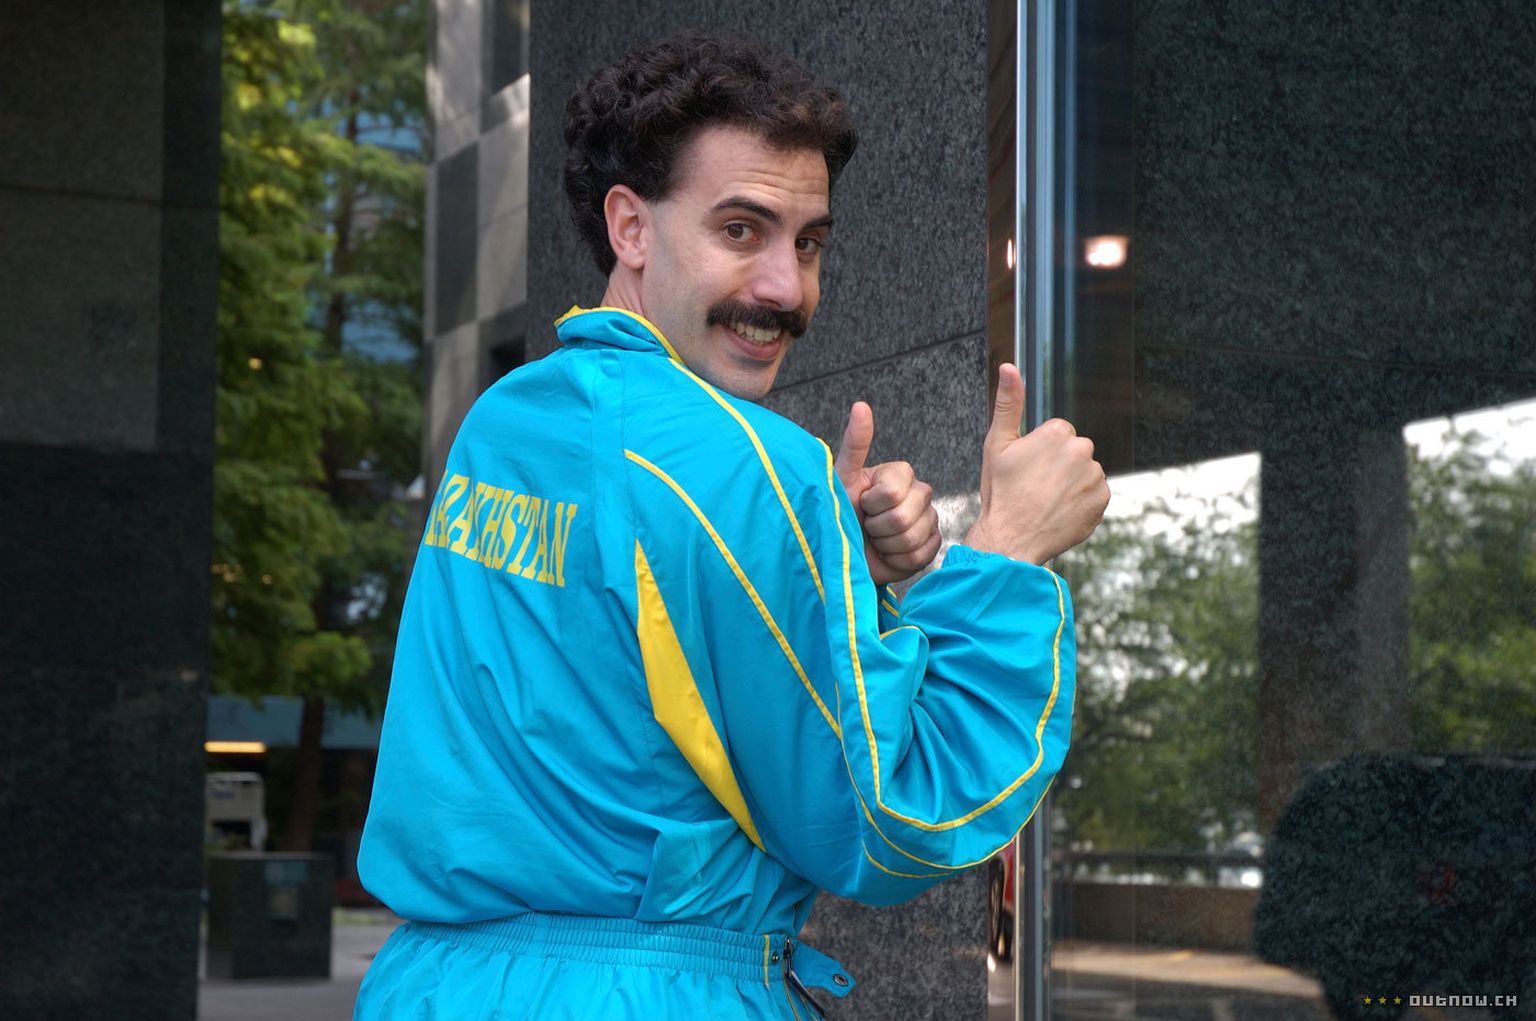 Sacha Baron Cohen sai salaja "Borati" järje purki?